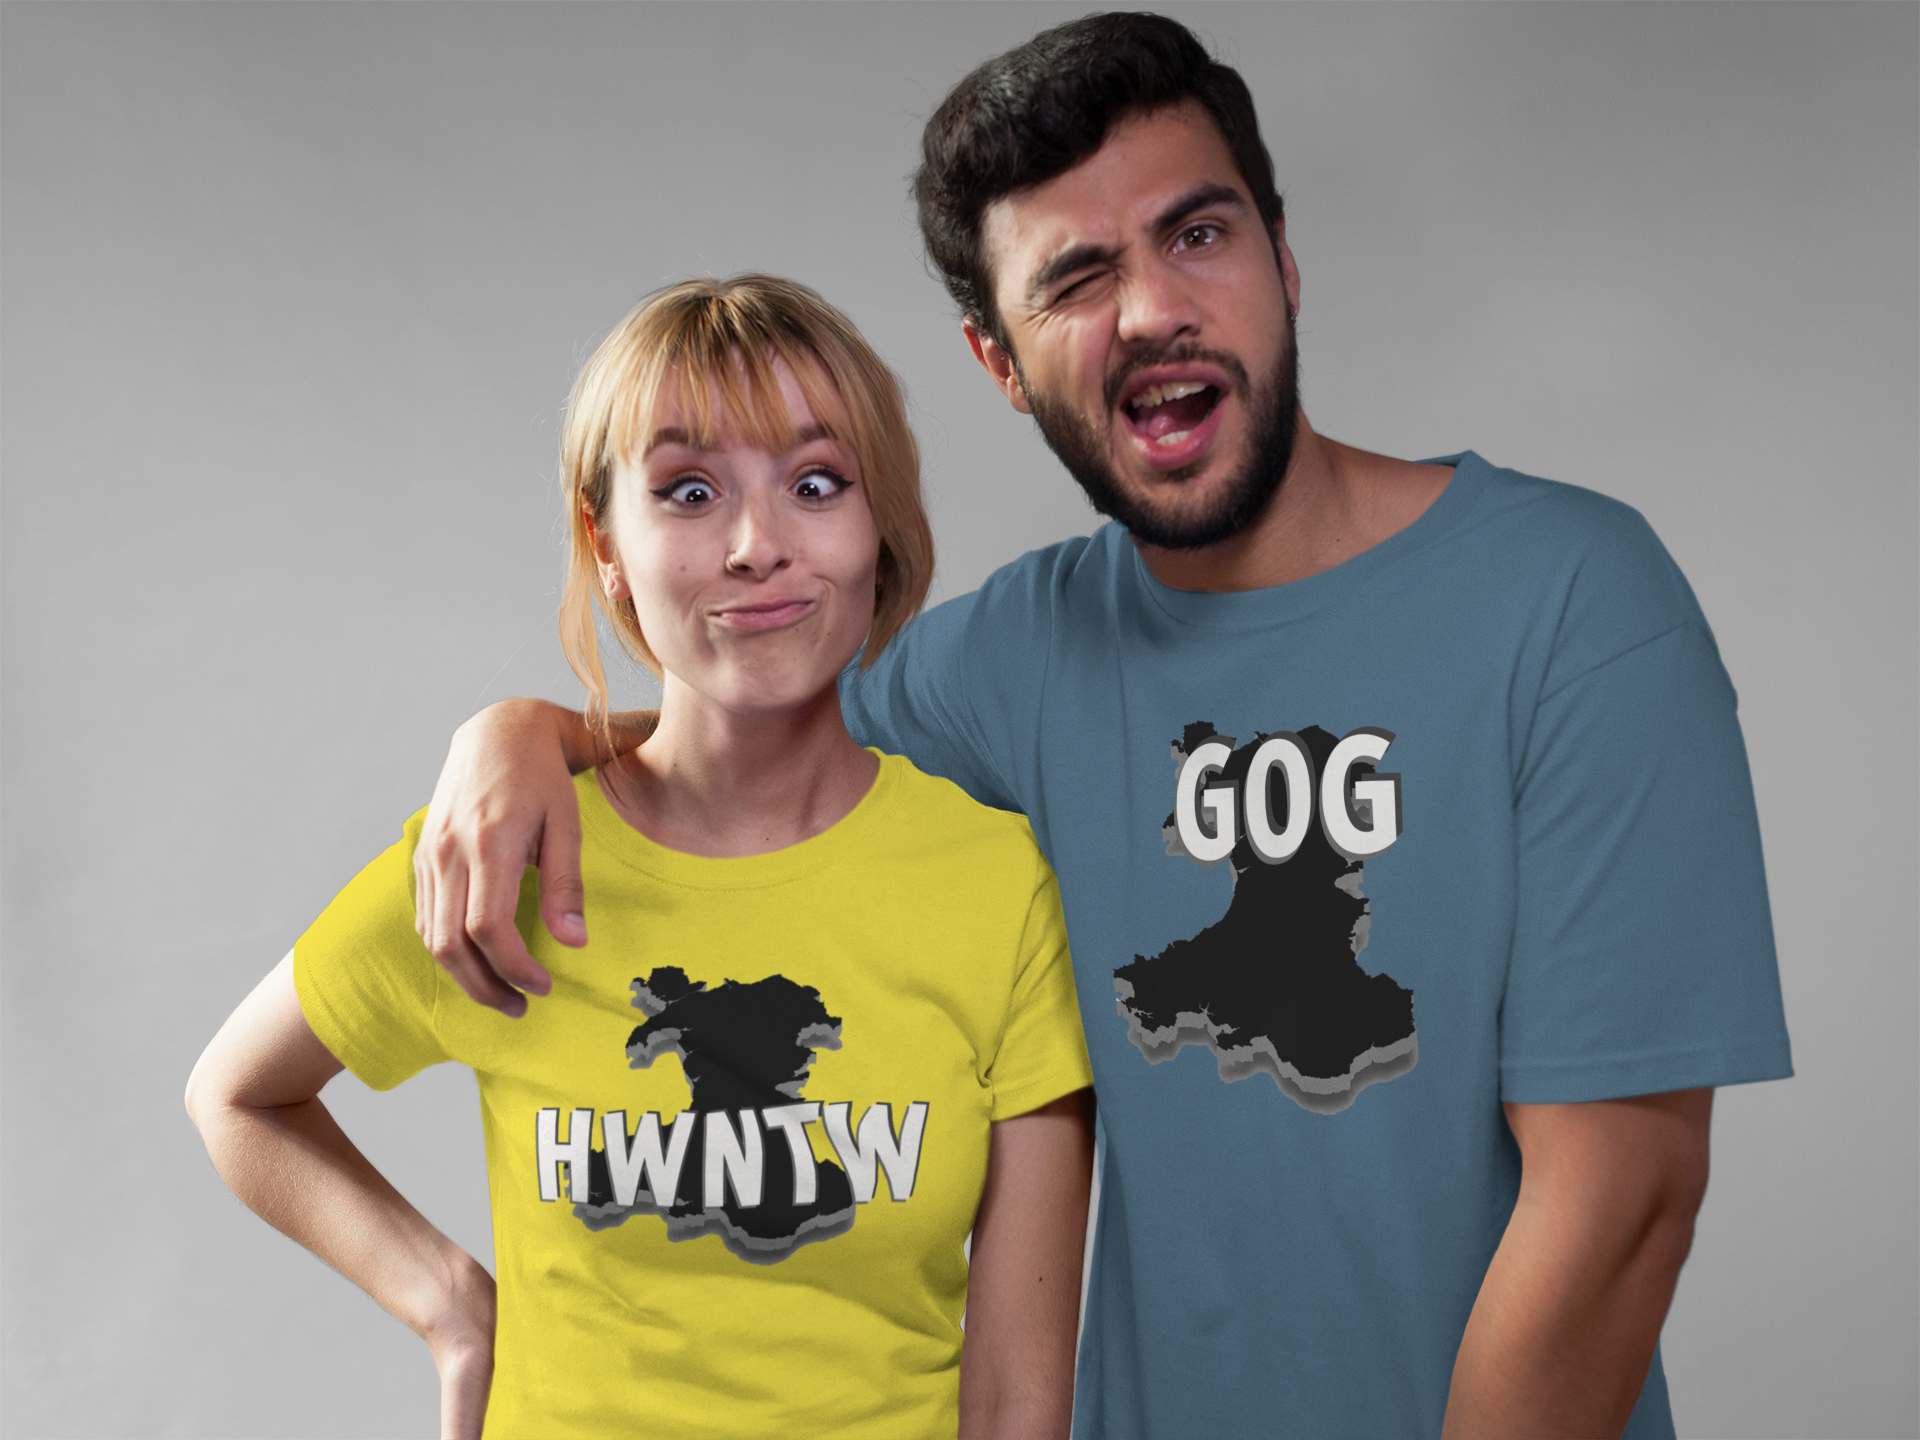 Gog or Hwntw?